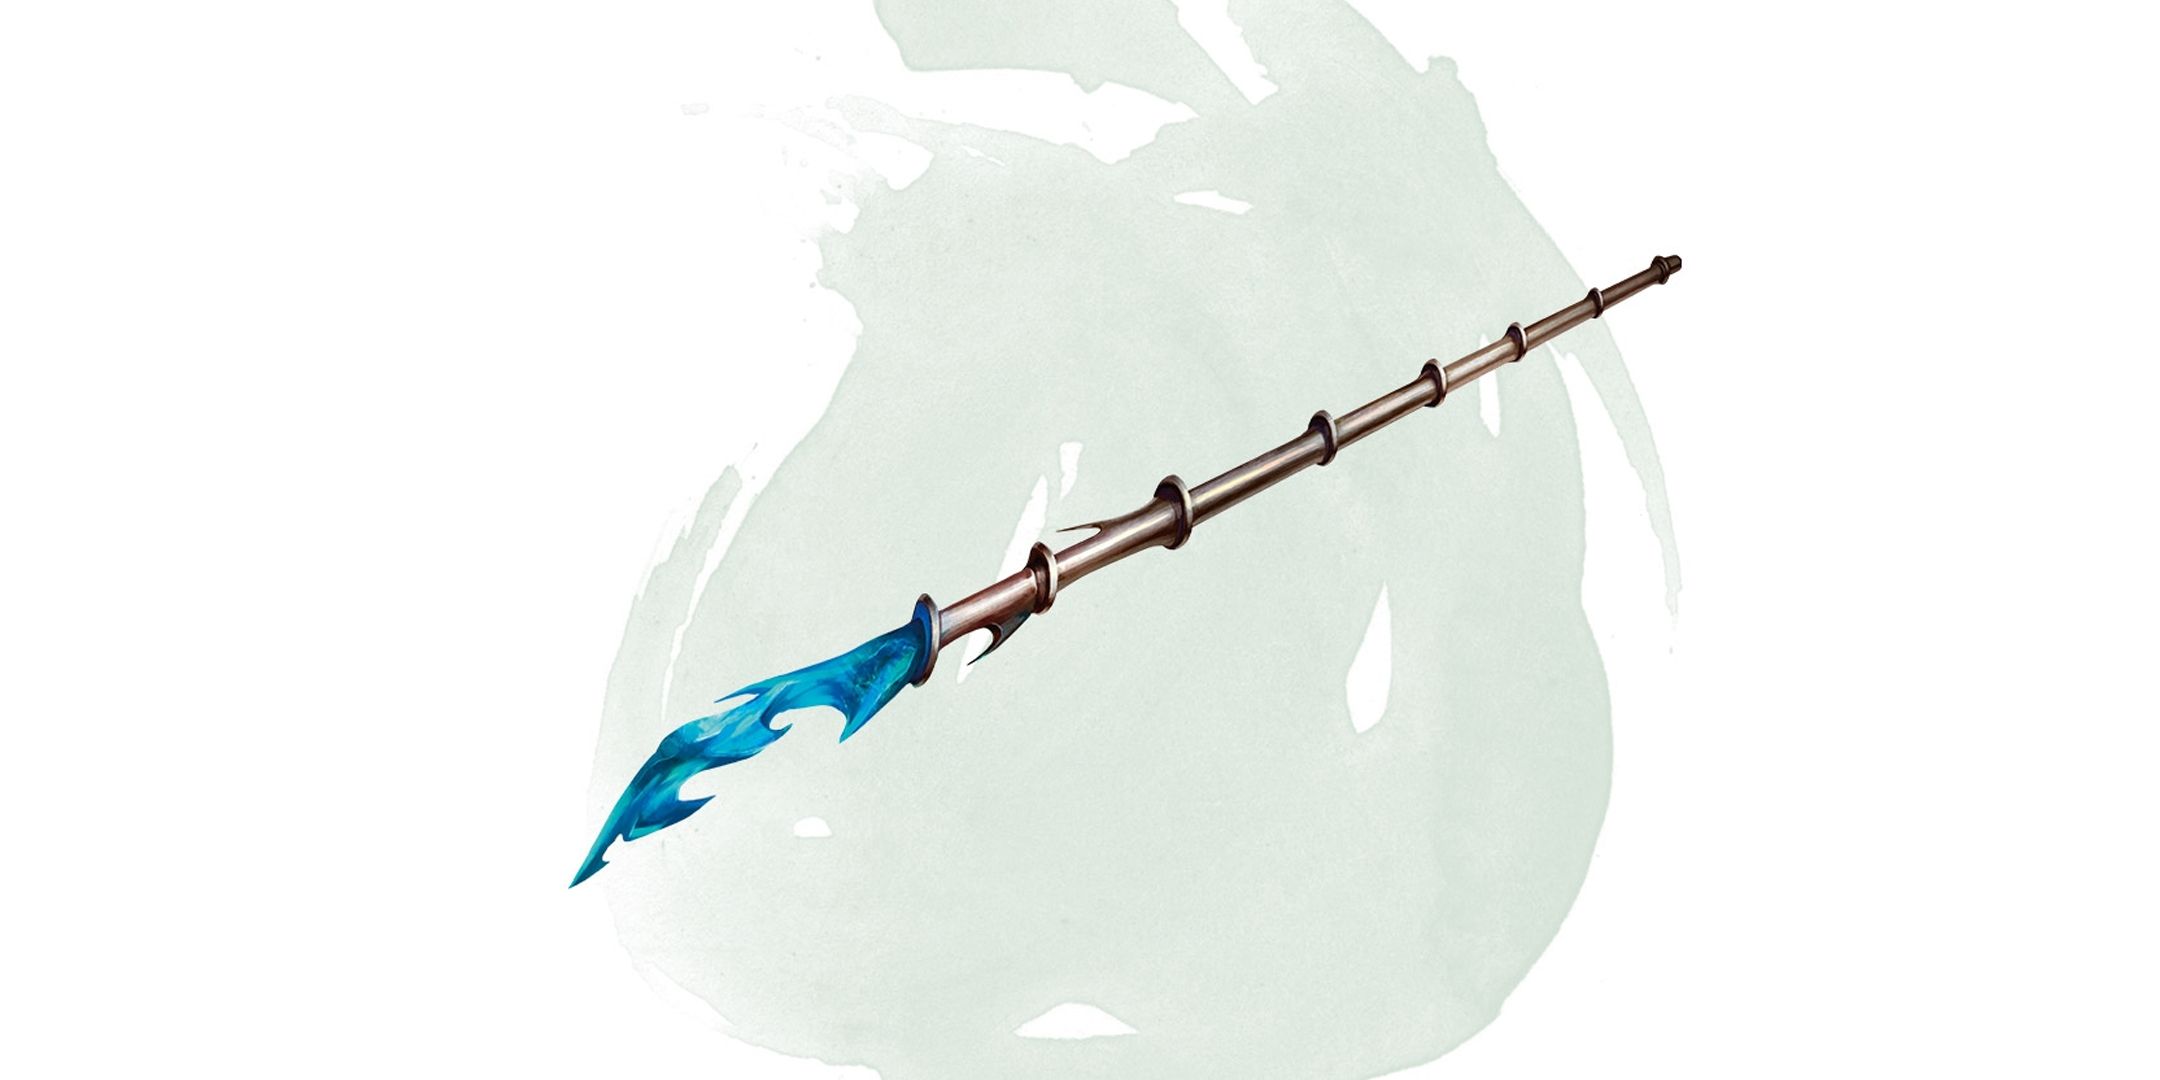 Arte de D&D de um cajado com um cristal azul esculpido na ponta.